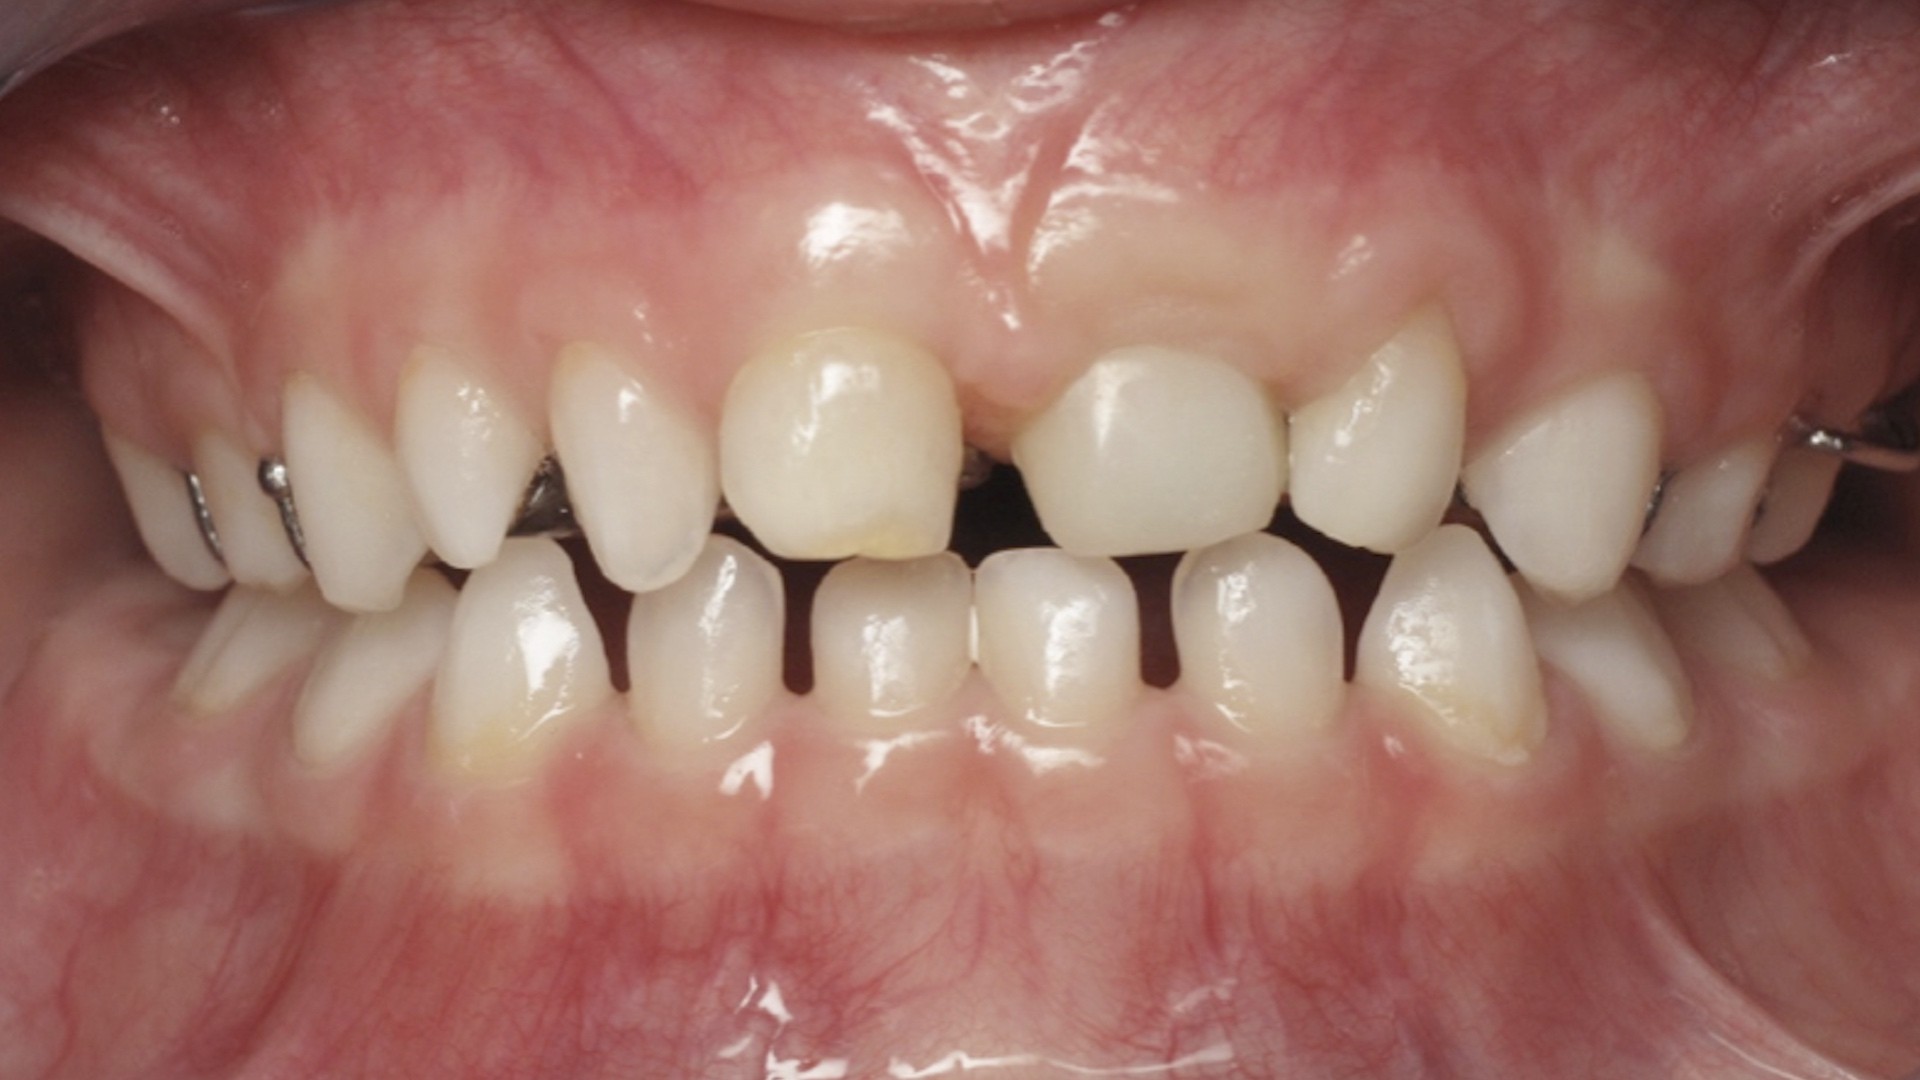 Le bilan première étape du traitement orthodontique.